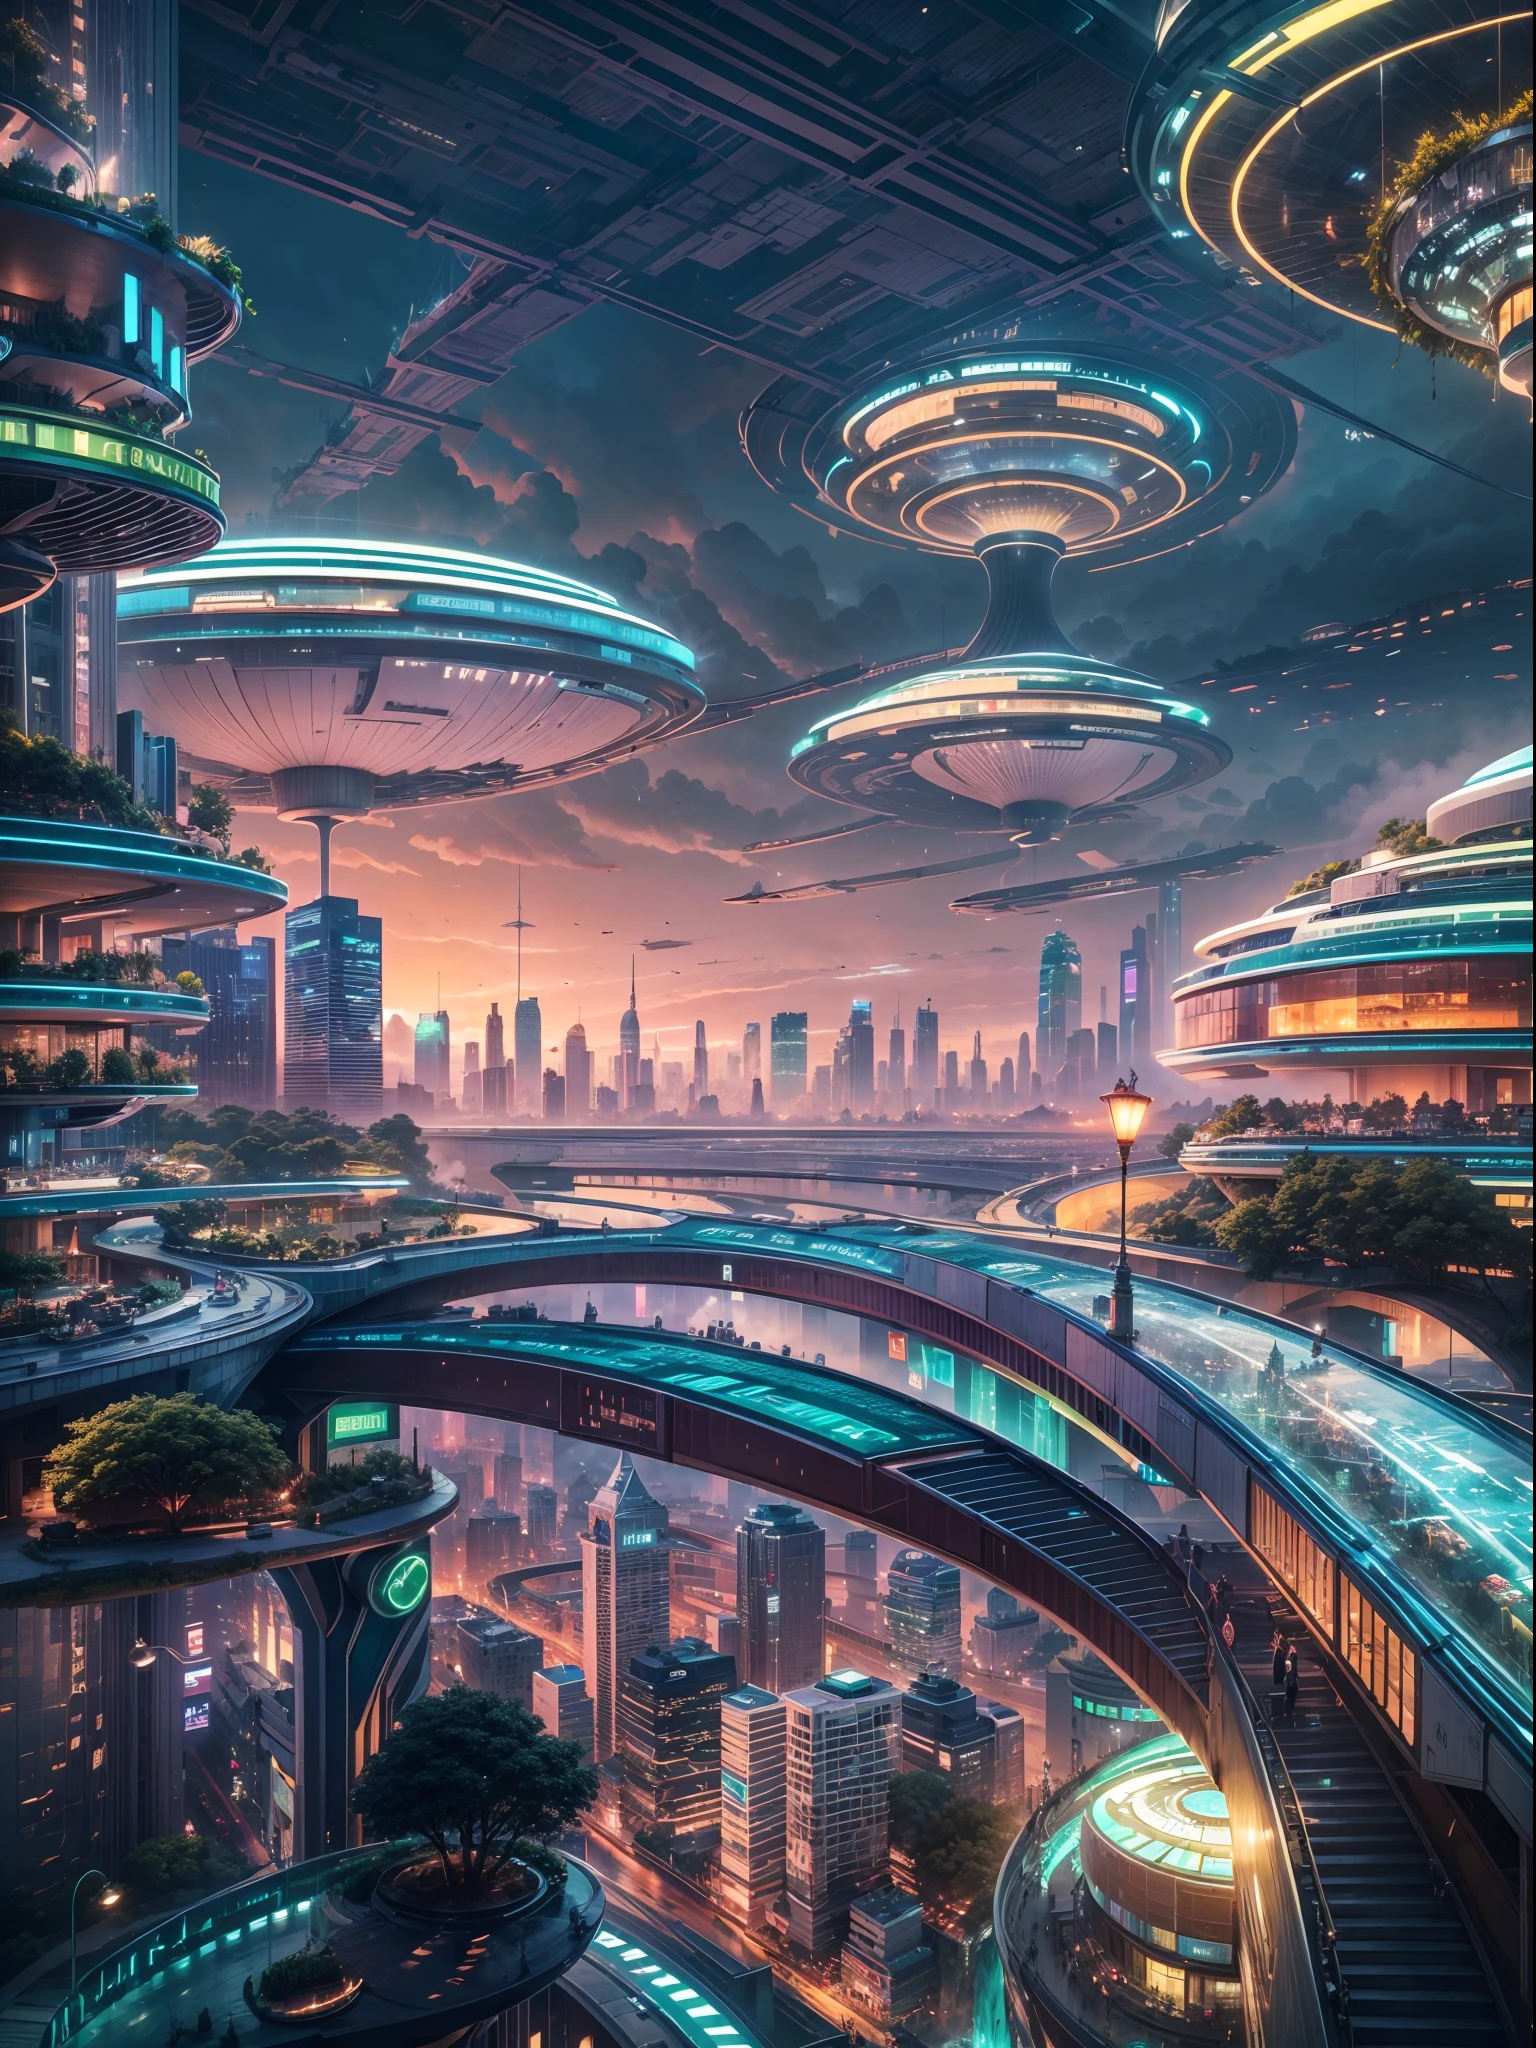 (最好的质量,4k,8千,高分辨率,杰作:1.2),极其详细,(实际的,photo实际的,photo-实际的:1.37),未来派漂浮城市,未来科技,巨型高科技平板平台上的城市,飞艇,漂浮在空中,未来城市,small 飞艇 around,高科技半球形平台,彩灯,先进的架构,现代建筑,摩天大楼,到达云层,令人惊叹的景色,城市景观,令人印象深刻的设计,与自然无缝融合,充满活力的氛围,未来交通系统,悬浮车辆,透明路径,郁郁葱葱的绿色植物,空中花园,瀑布,壮丽的天际线,水面上的倒影,波光粼粼的河流,建筑创新,futuristic 摩天大楼,透明圆顶,形状奇特的建筑物,高架人行道,令人印象深刻的天际线,发光的灯光,未来科技,简约设计,风景名胜,全景,直冲云霄的塔,鲜艳的色彩,史诗般的日出,史诗般的日落,绚丽的灯光,神奇的氛围,未来之城,城市乌托邦,奢华的生活方式,创新能源,可持续发展,智慧城市技术,先进的基础设施,宁静的气氛,自然与科技和谐共存,令人惊叹的城市景观,前所未有的城市规划,建筑与自然的无缝连接,高科技大都市,尖端工程奇迹,未来城市生活,富有远见的建筑理念,节能建筑,与环境和谐相处,漂浮在云层之上的城市,乌托邦梦想变成现实,无限可能,发达的交通网络,绿色能源整合,创新材料,令人印象深刻的全息显示,先进的通信系统,令人惊叹的鸟瞰图,宁静祥和的环境,现代主义美学,空灵之美